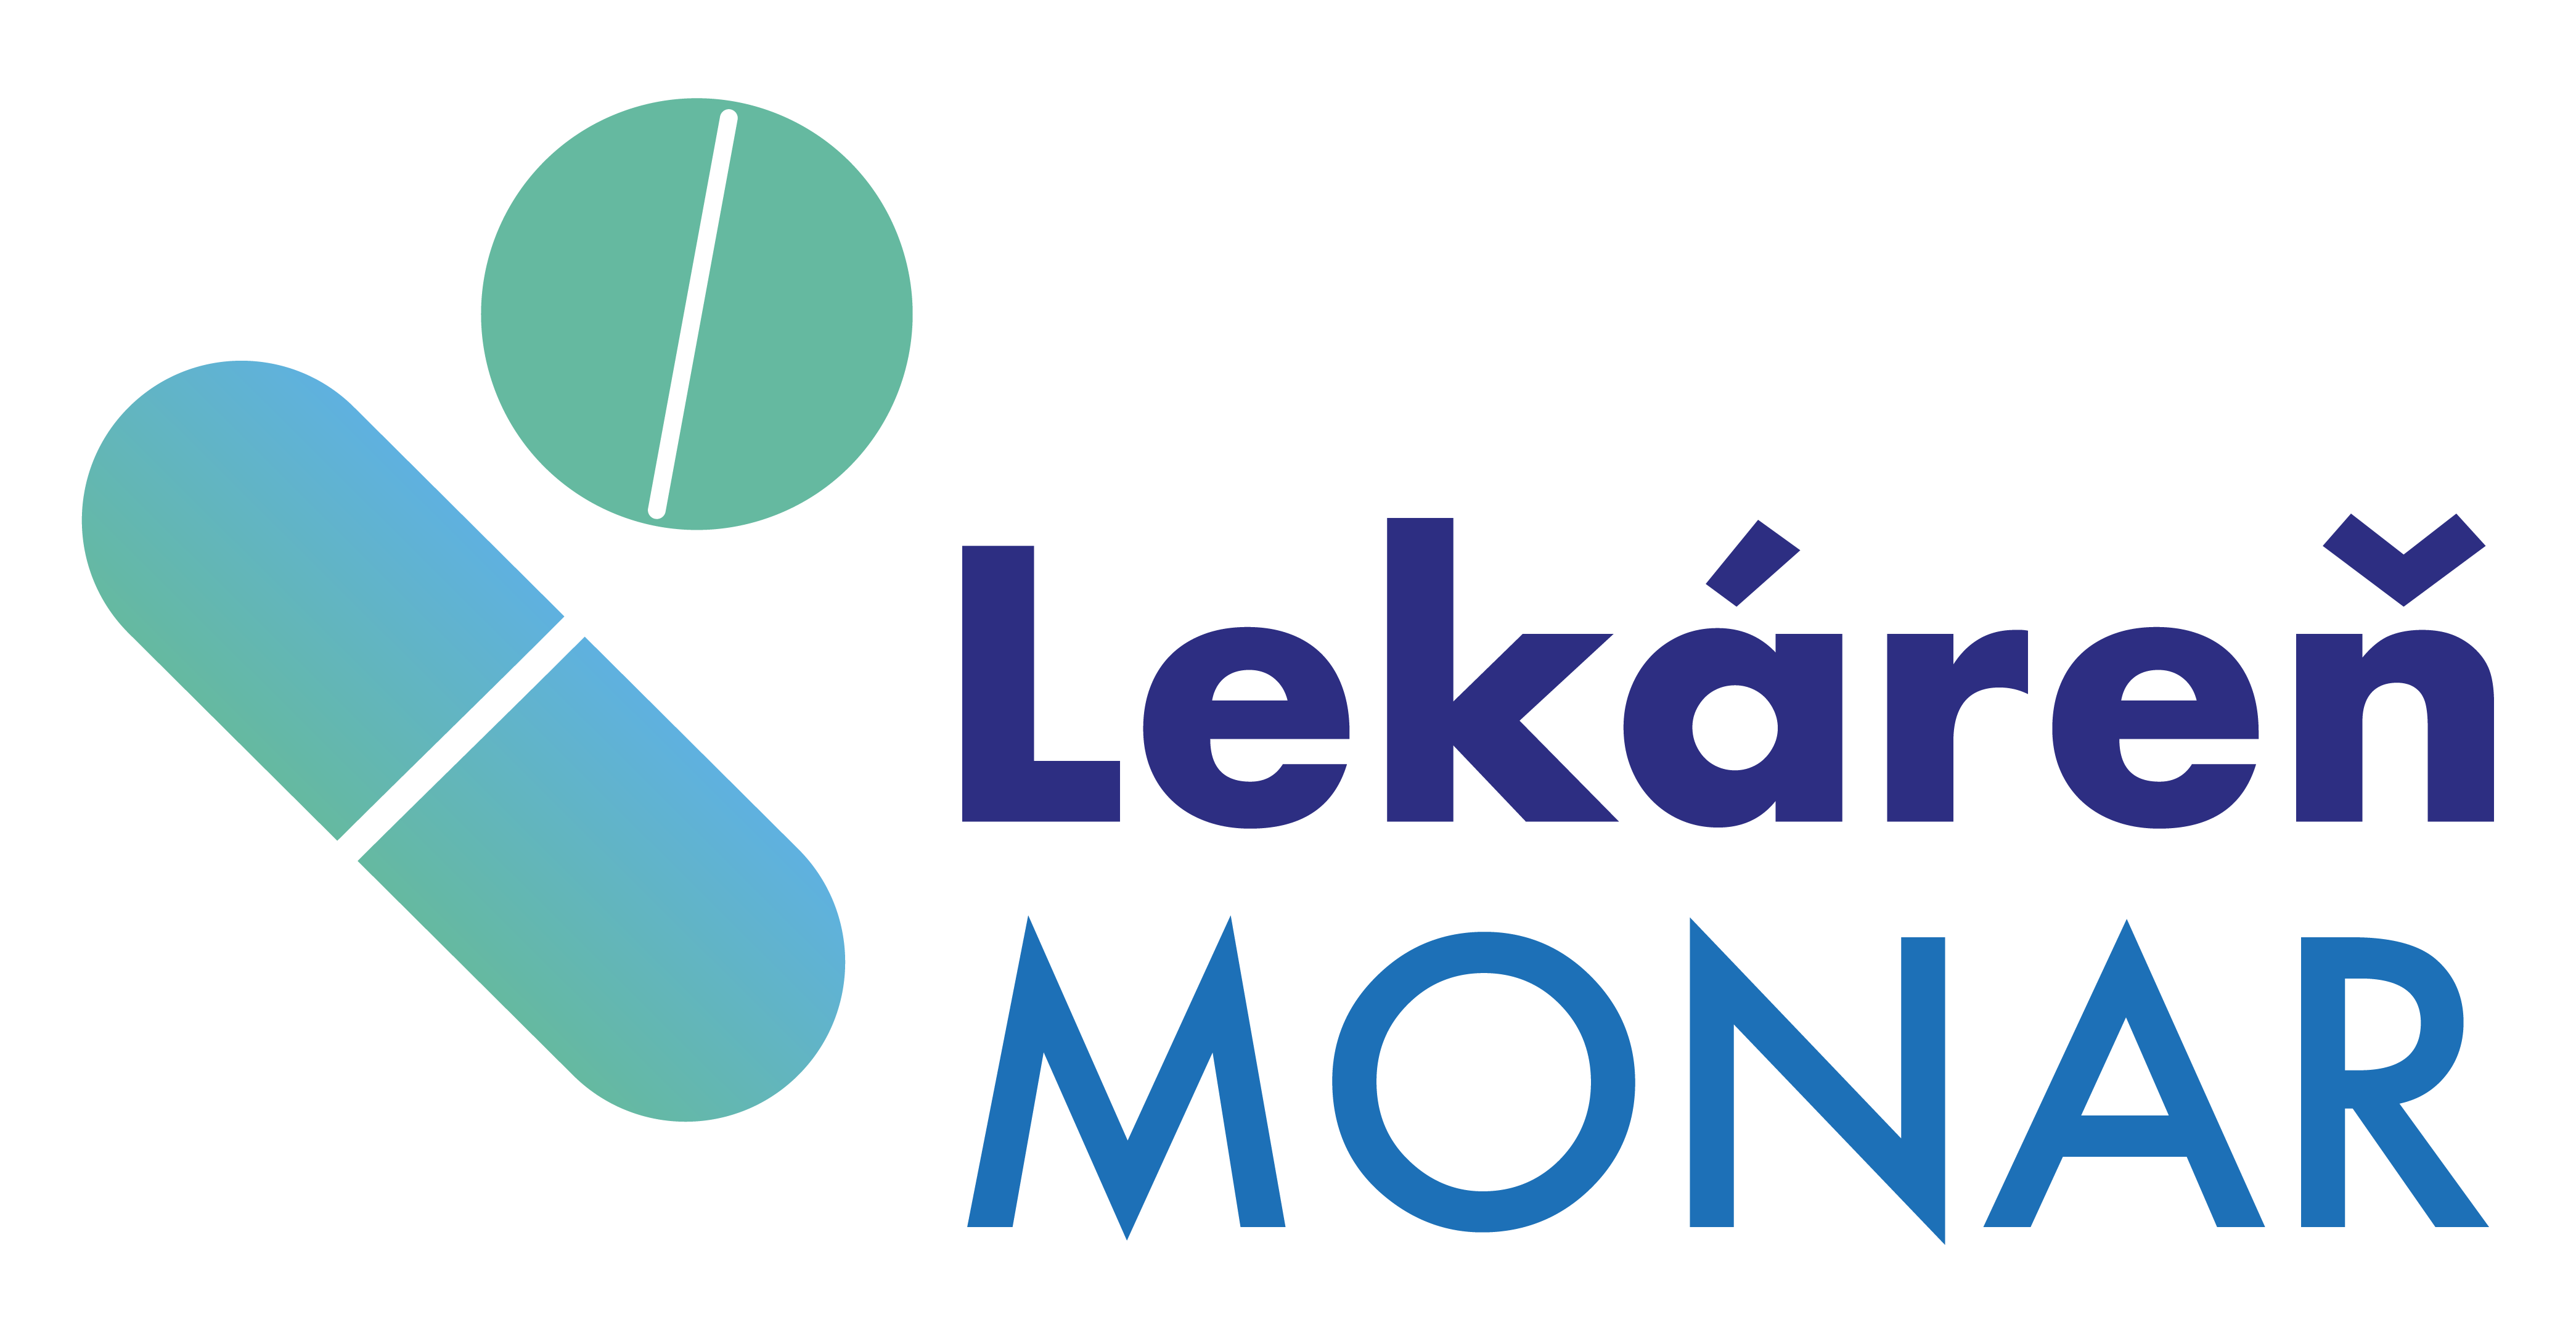 Monar logo